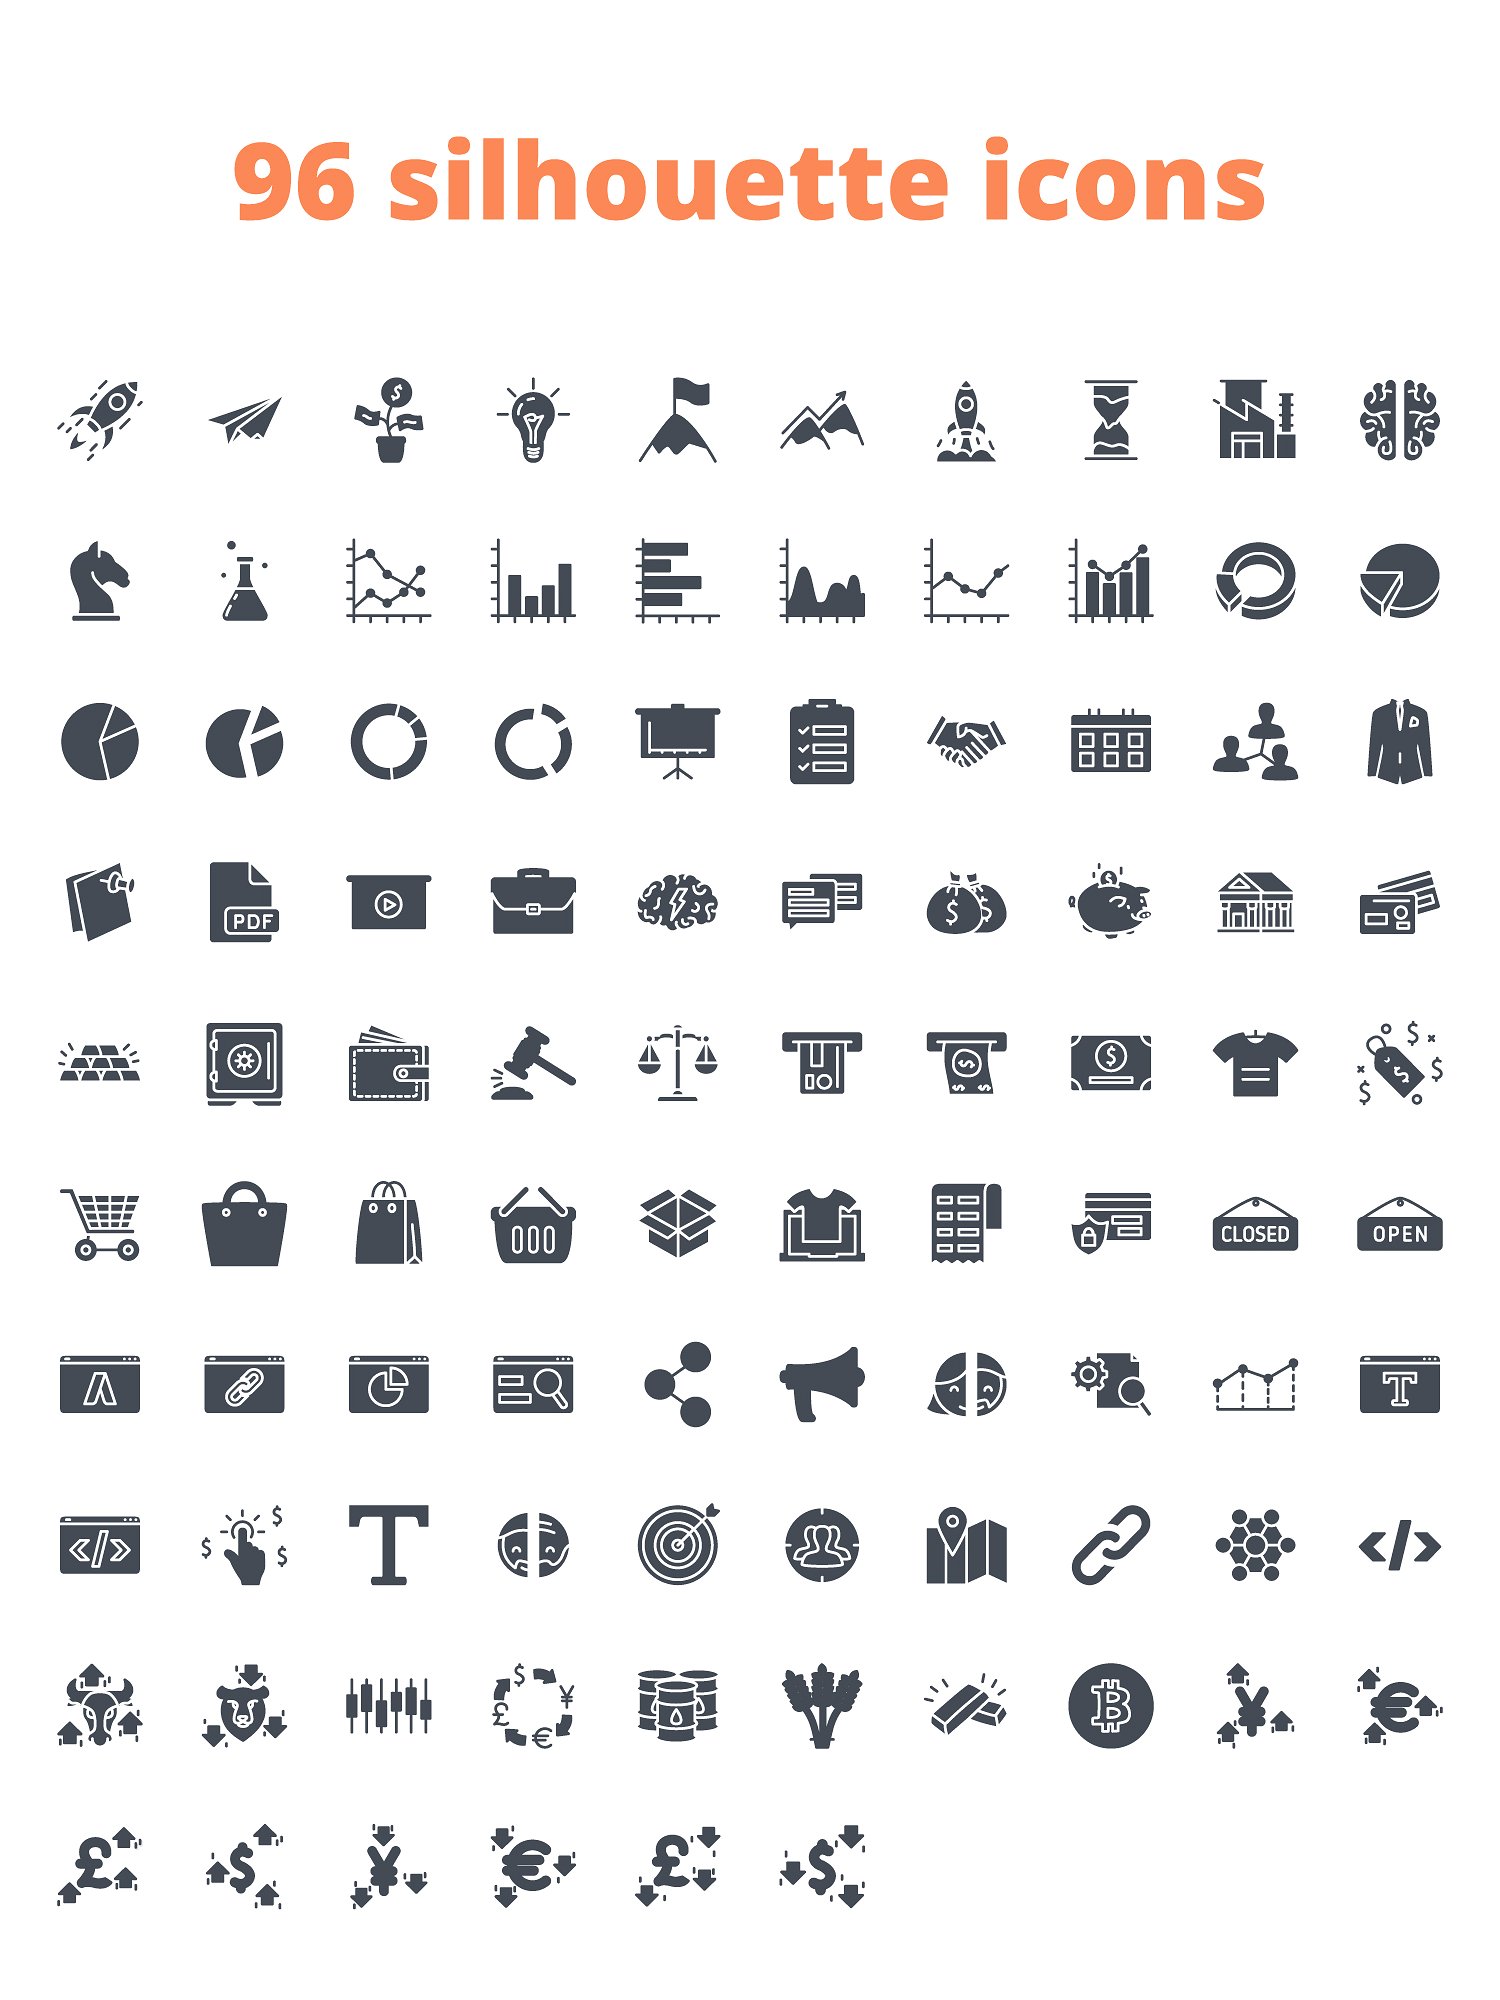 288枚企业主题图标 288 Business Icons（三种风格）插图(6)